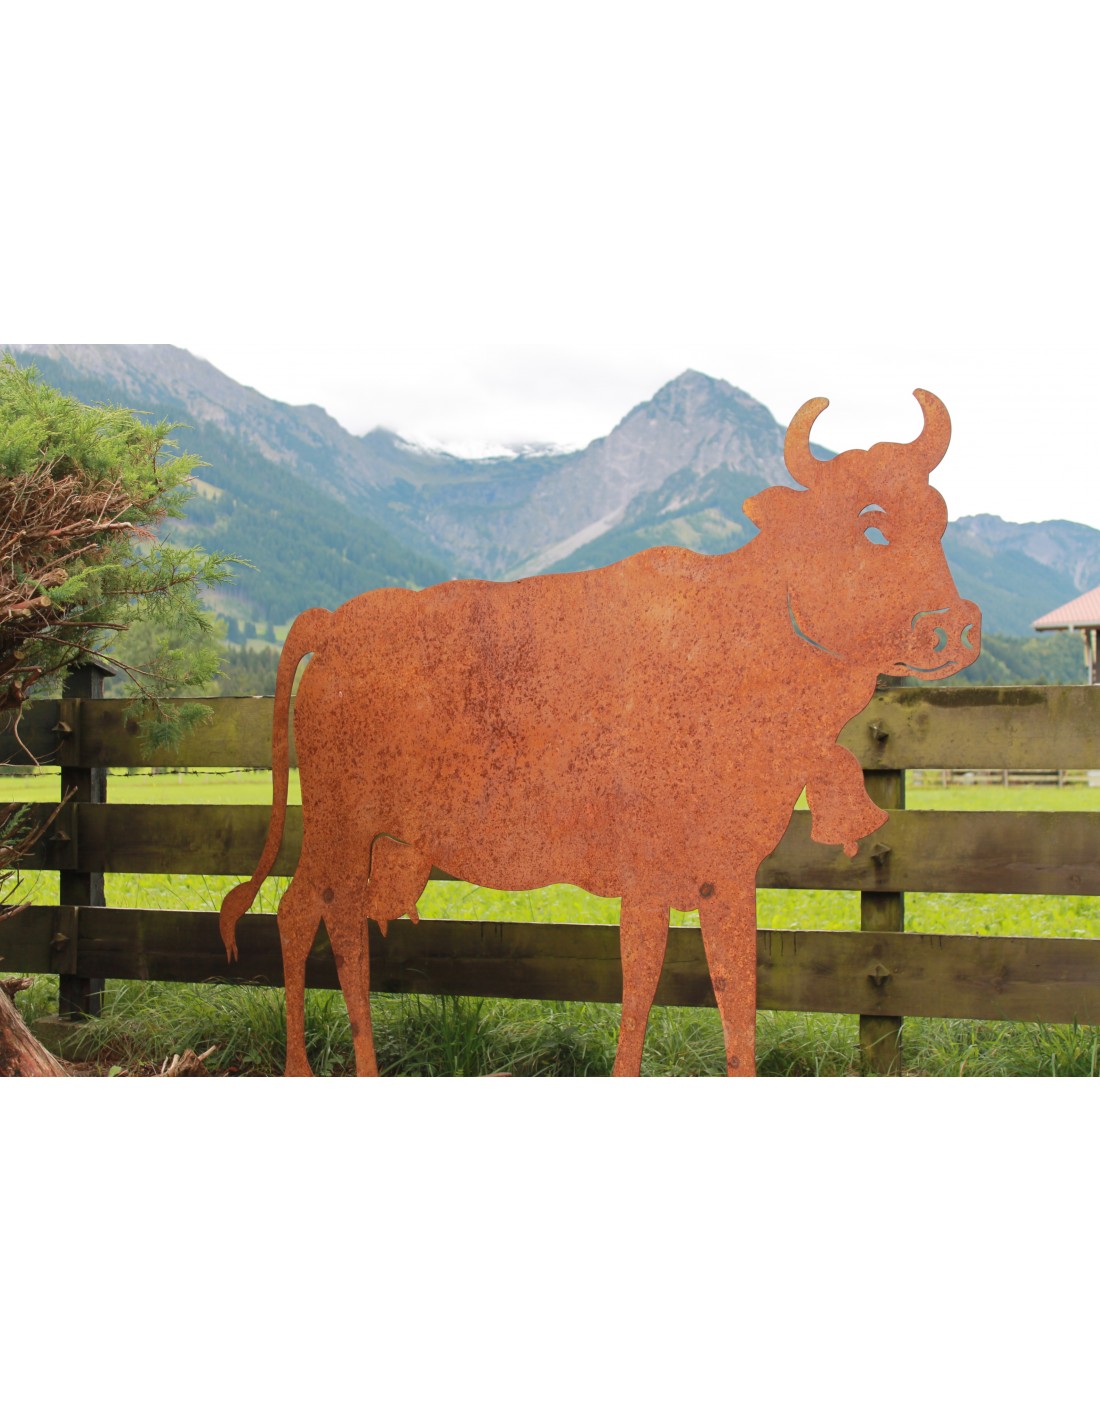 Deko Kuh lebensgroß 140 x 200 cm - Tierfigur für den Garten - Abholangebot